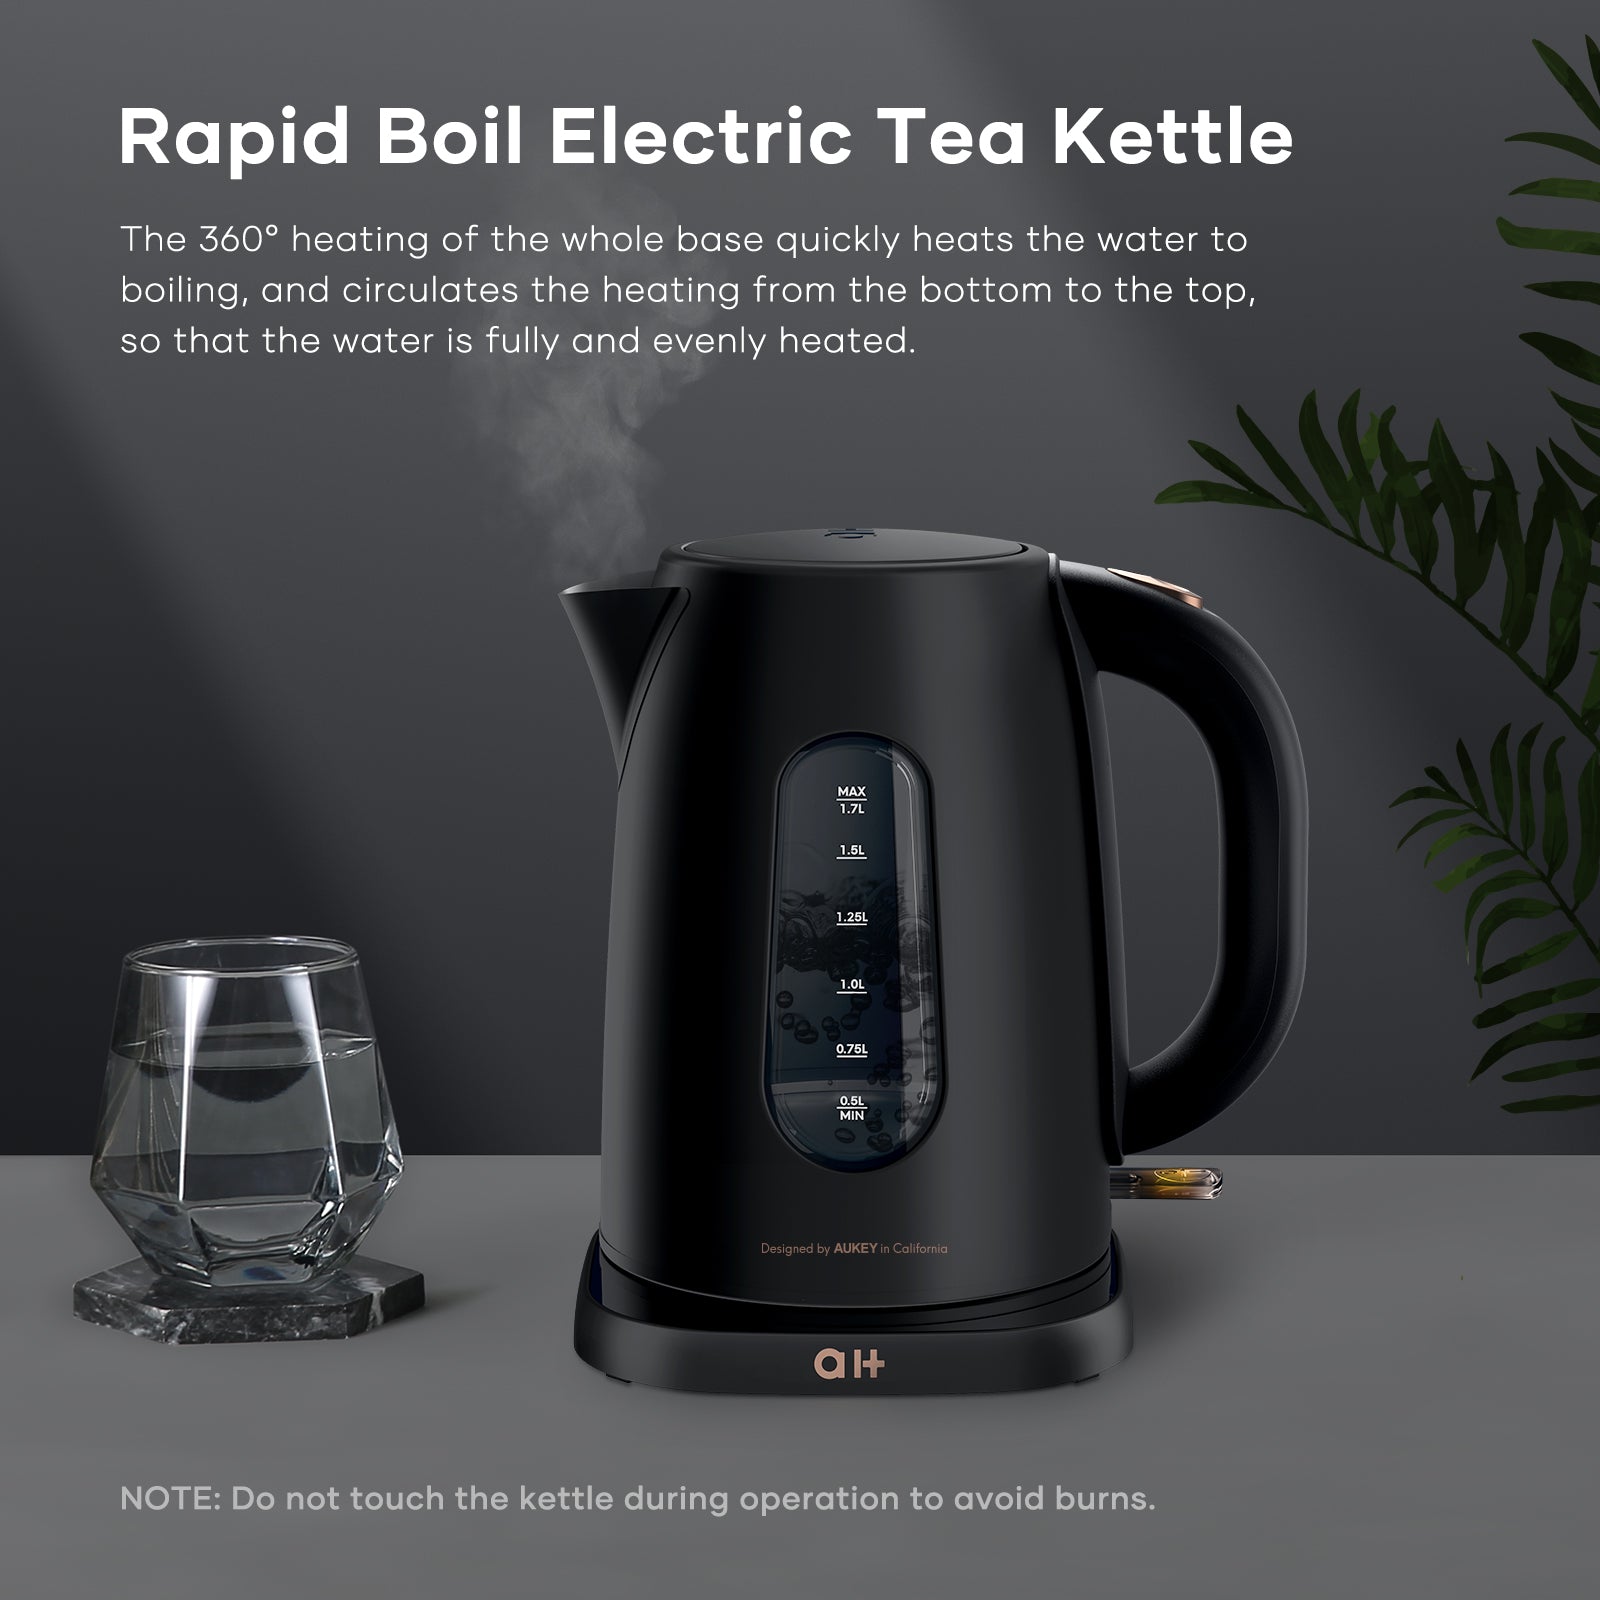 Speed-boil Water Electric Kettle, 1.7l 1500w, Coffee & Tea Kettle